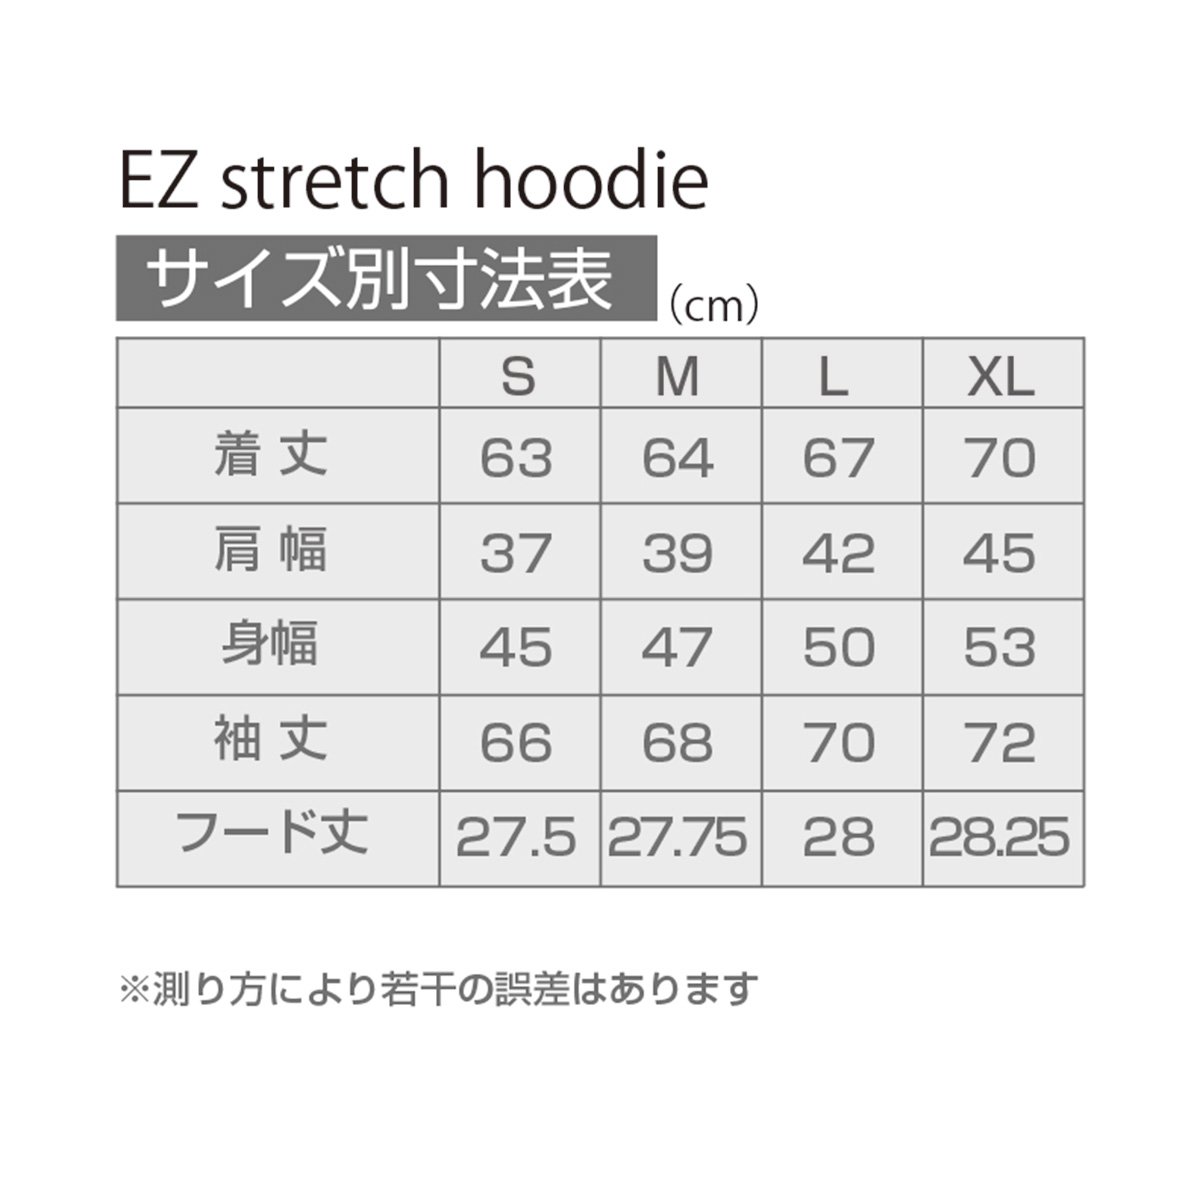 EZ stretch hoodie